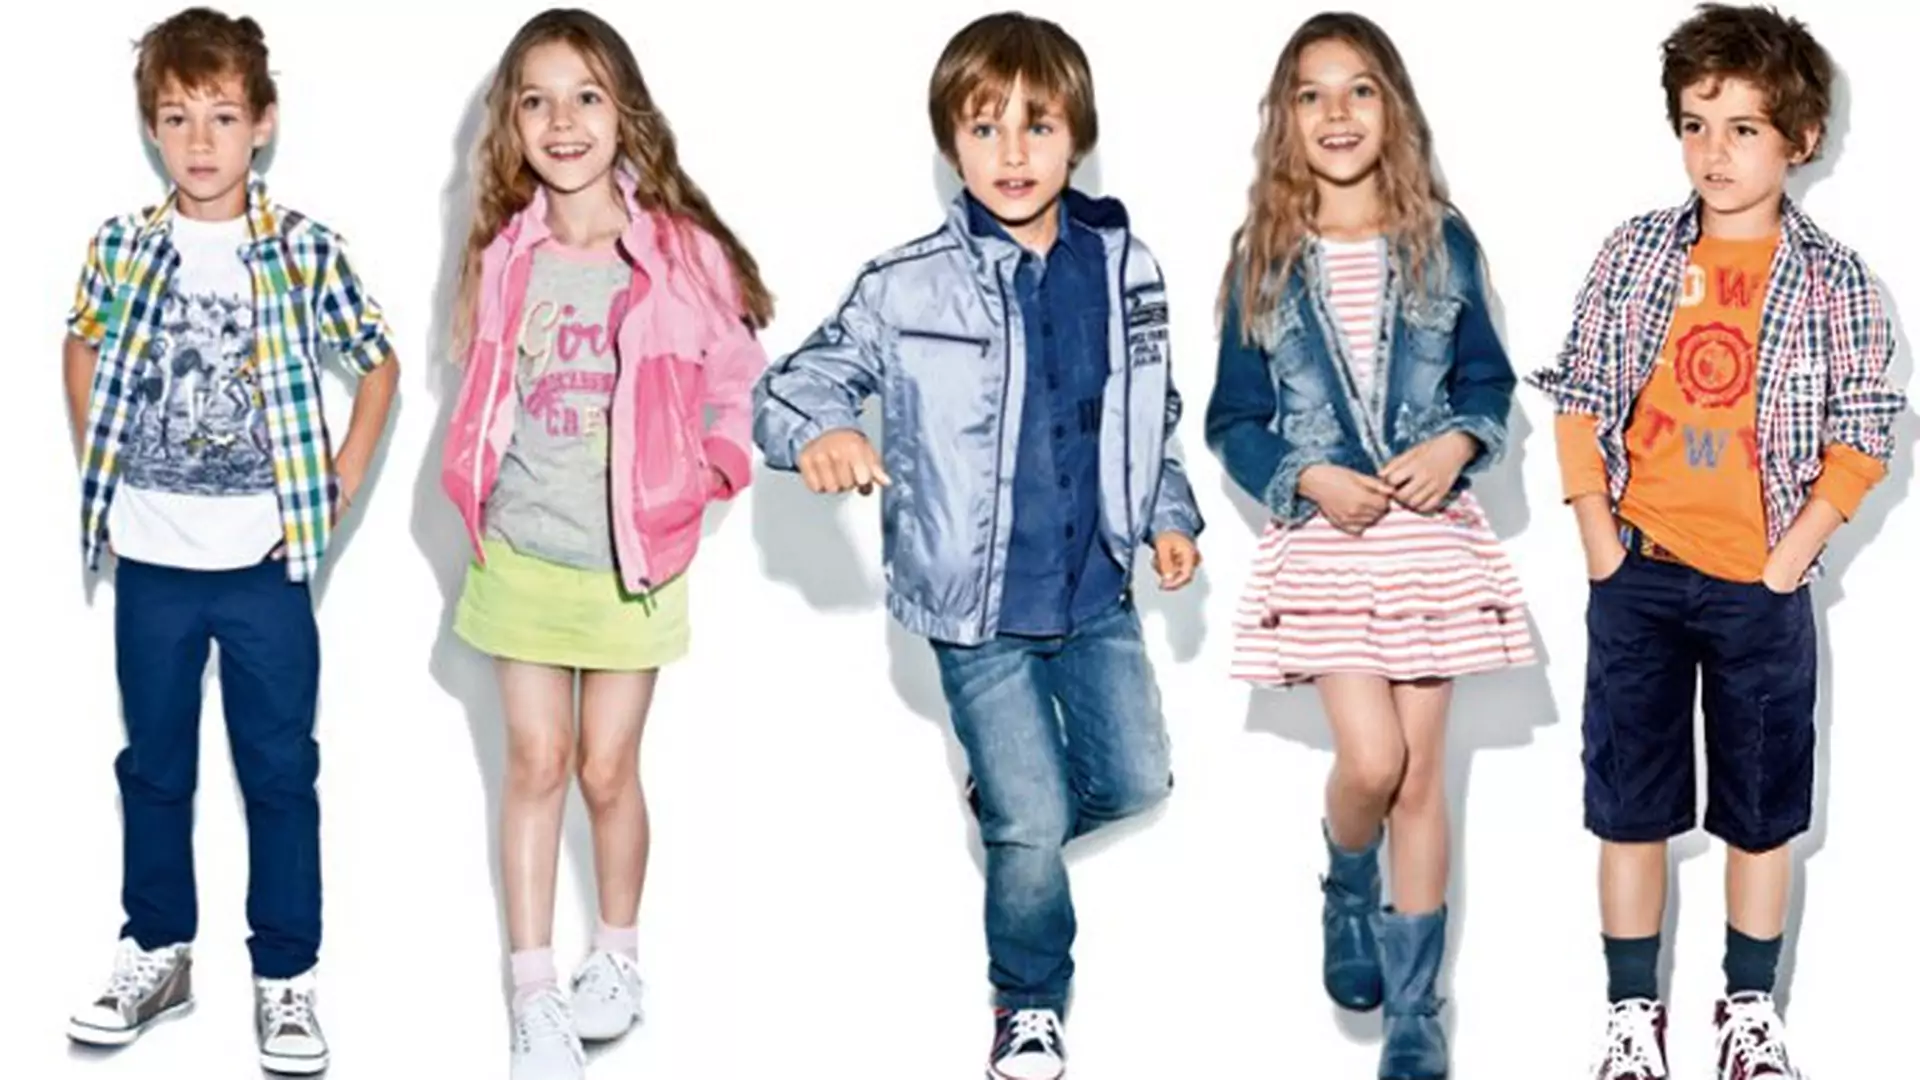 Buty Geox dla dzieci - zdrowie i moda w jednym